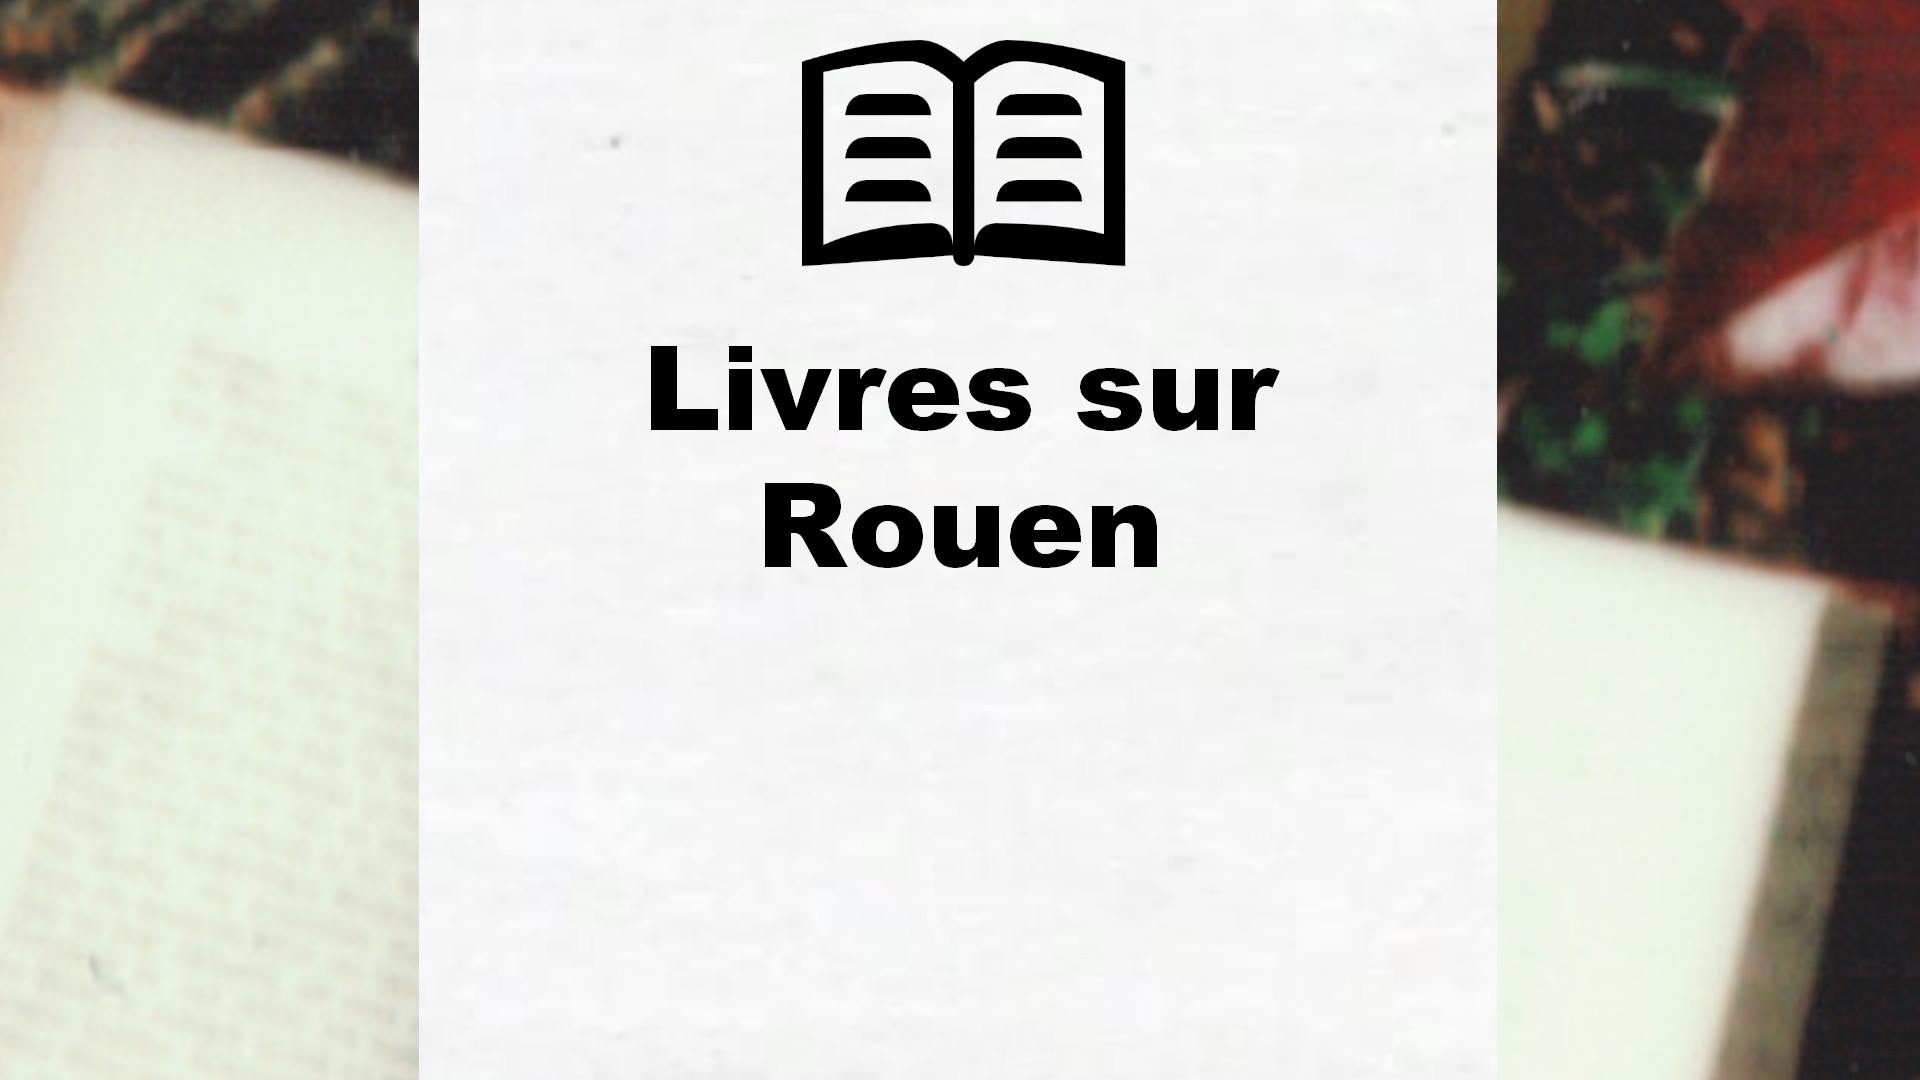 Livres sur Rouen